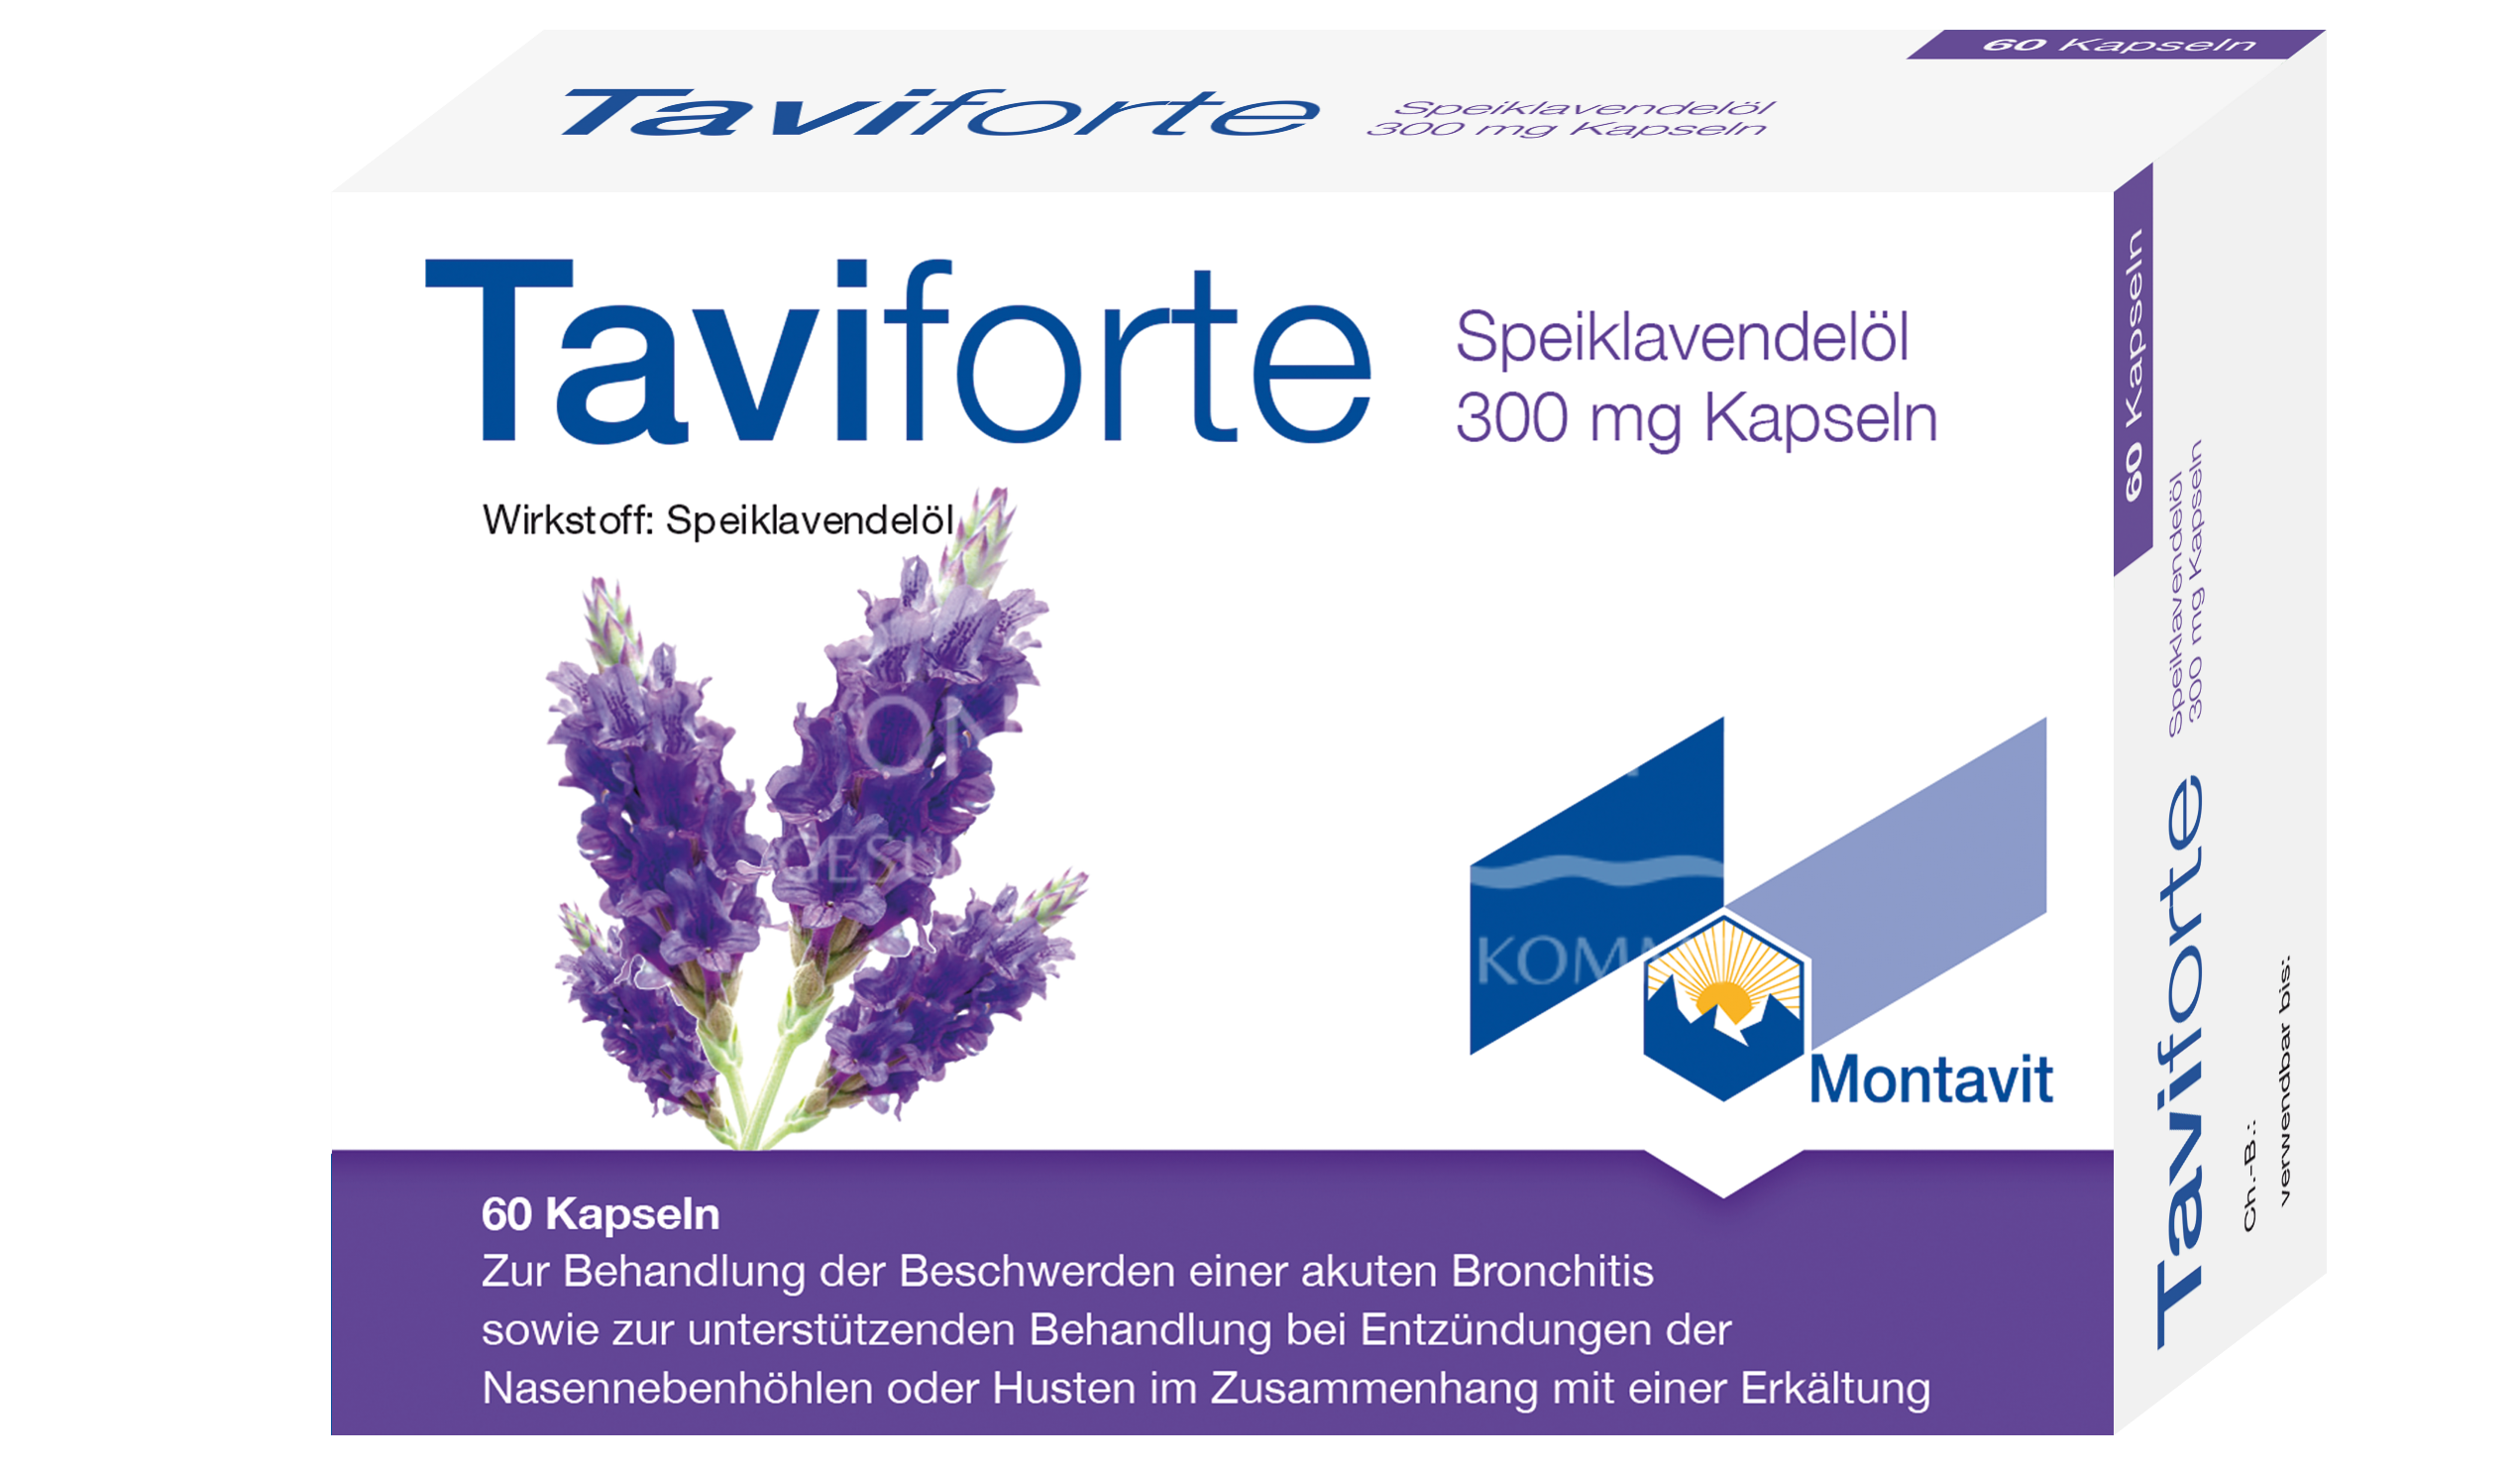 Taviforte 300 mg Kapseln